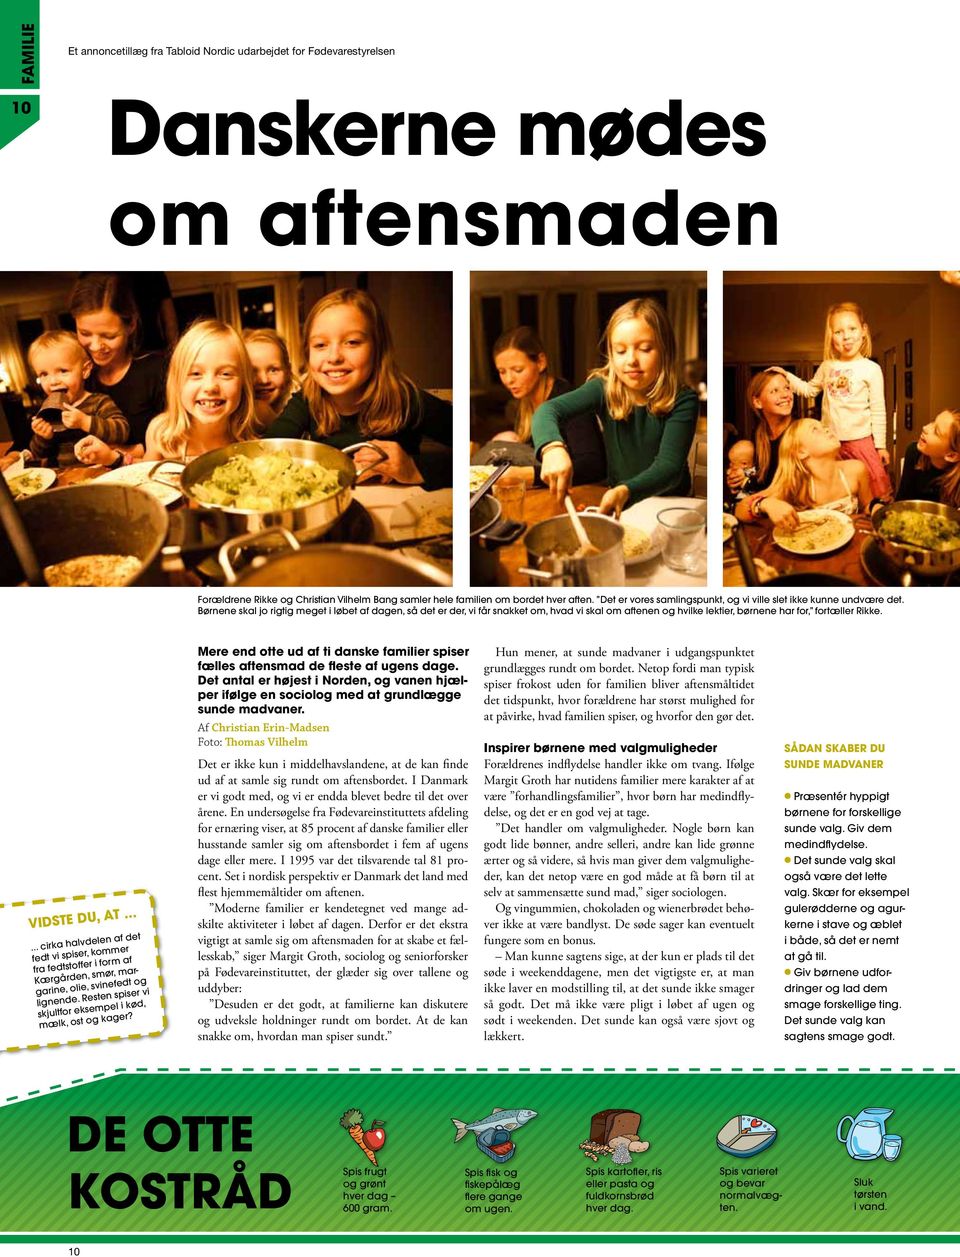 Et annoncetillæg fra Tabloid Nordic udarbejdet for Fødevarestyrelsen Pærer frem for popcorn på hylden Slik, chips, pizza og kage lokker rundt om hvert gadehjørne, og gør det svært at holde den sunde